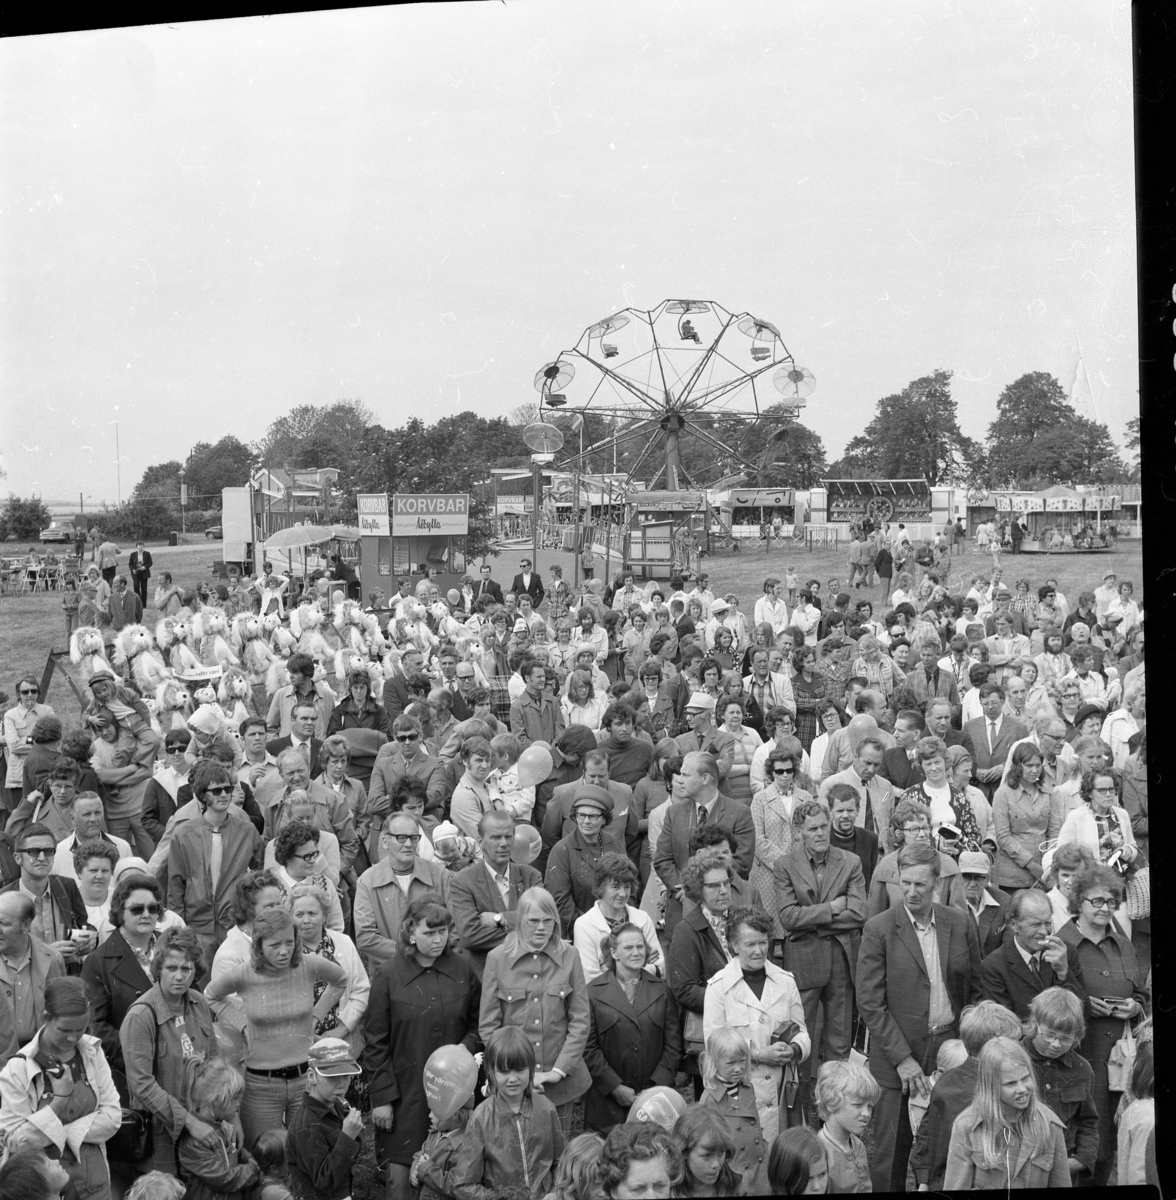 En folksamling står och tittar upp mot en scen, i bakgrunden karuseller, lottstånd och korvbar.